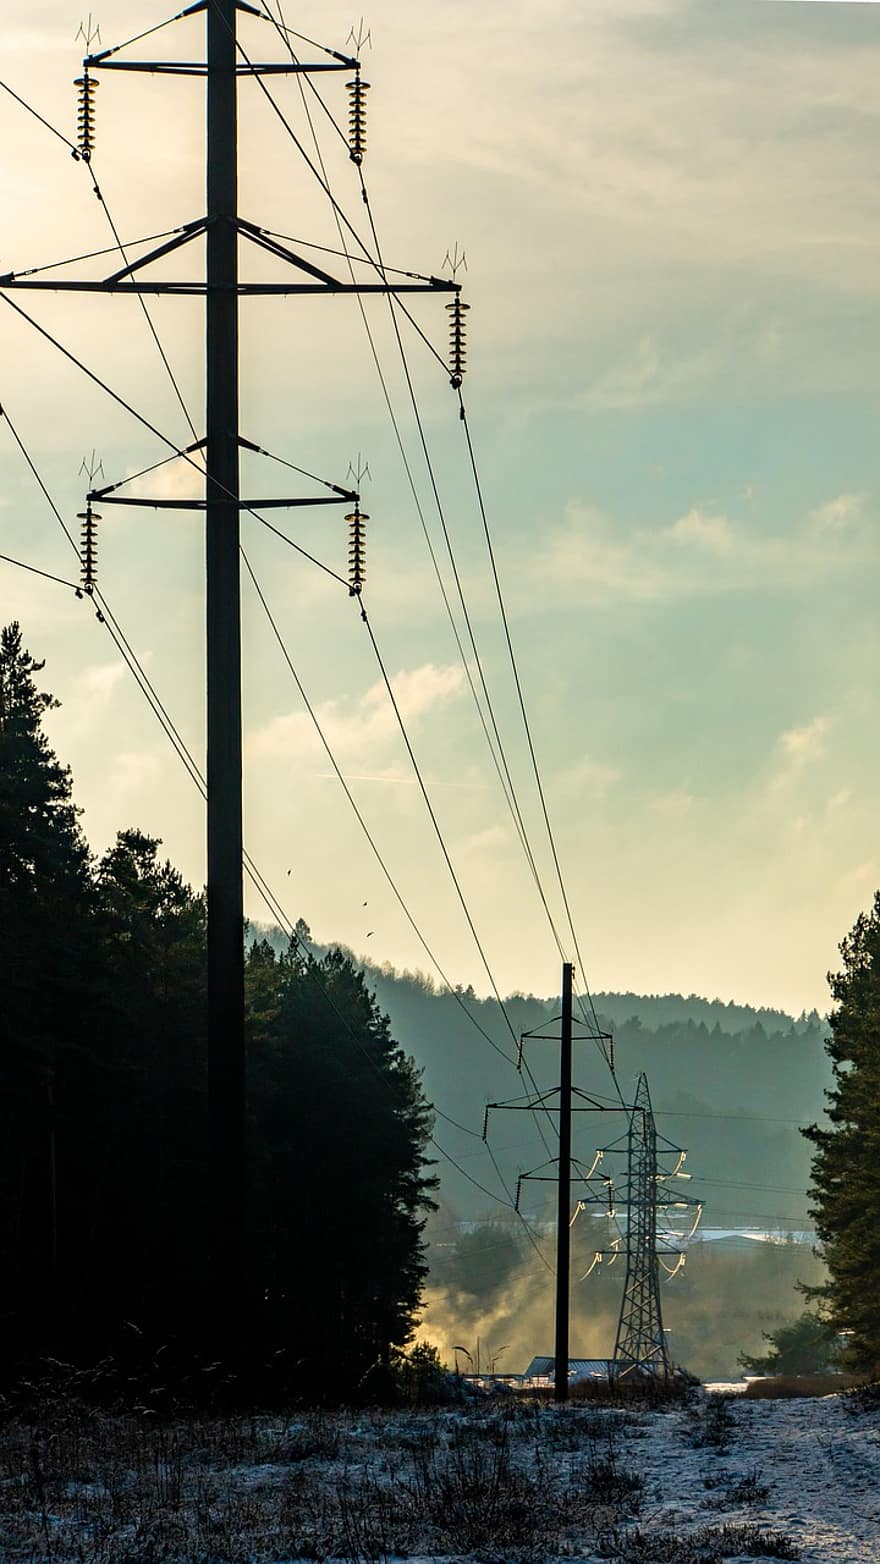 piló, cables, silueta, torre de transmissió, torre de potència, electricitat, poder, indústria, paisatge, núvols, elèctric